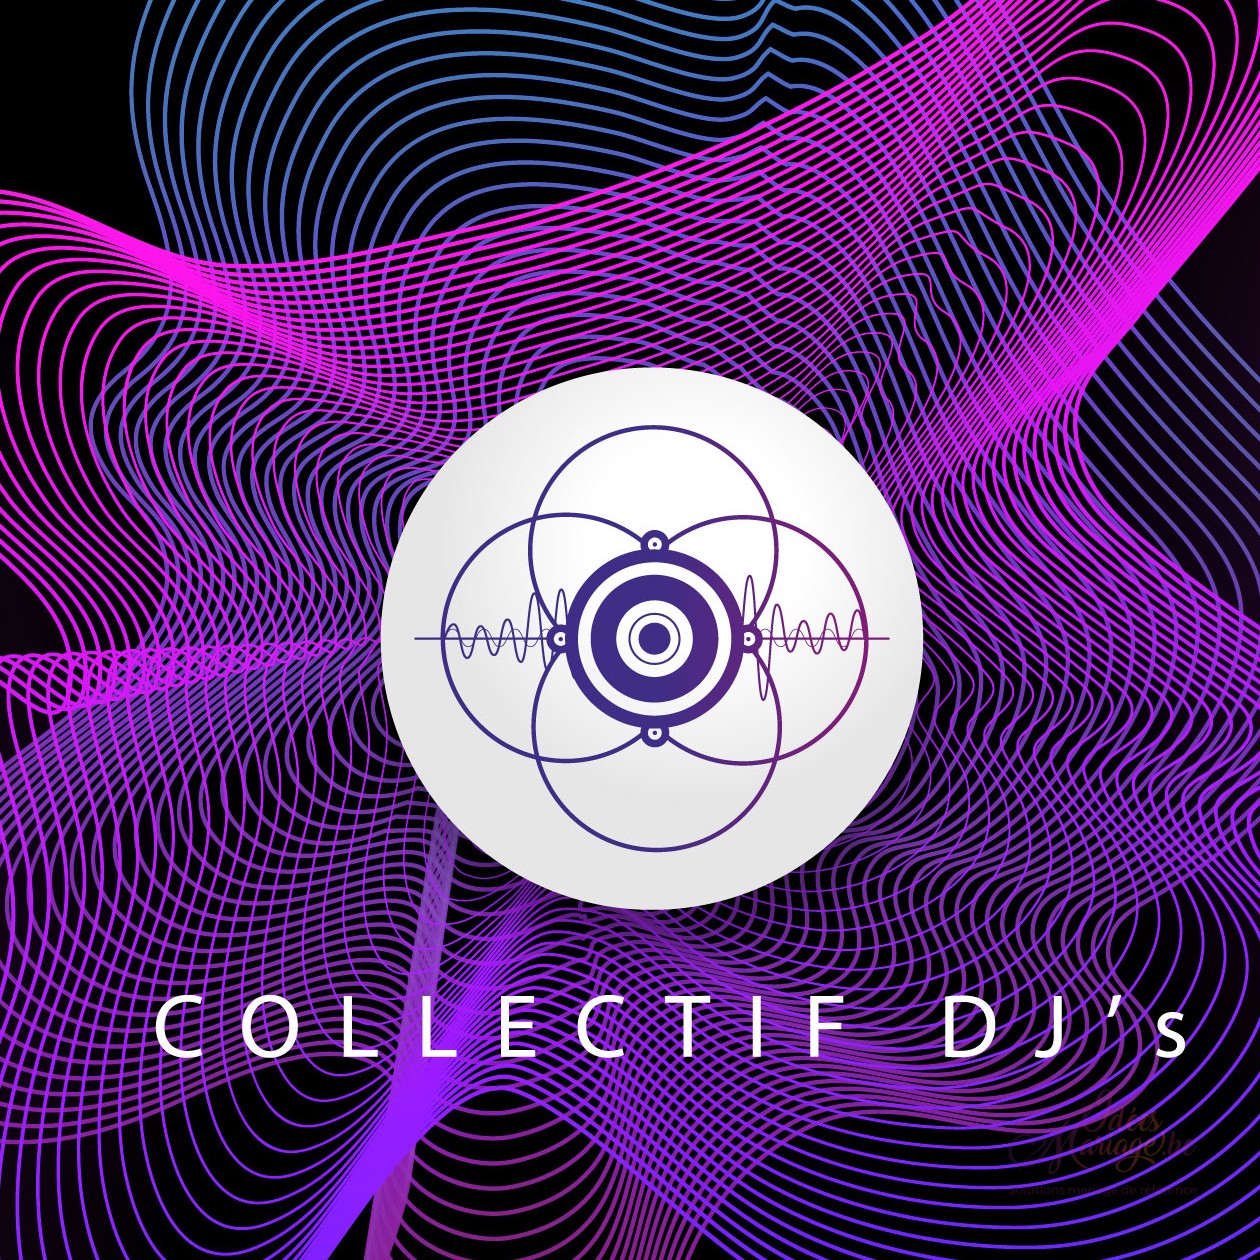 COLLECTIF DJ'S